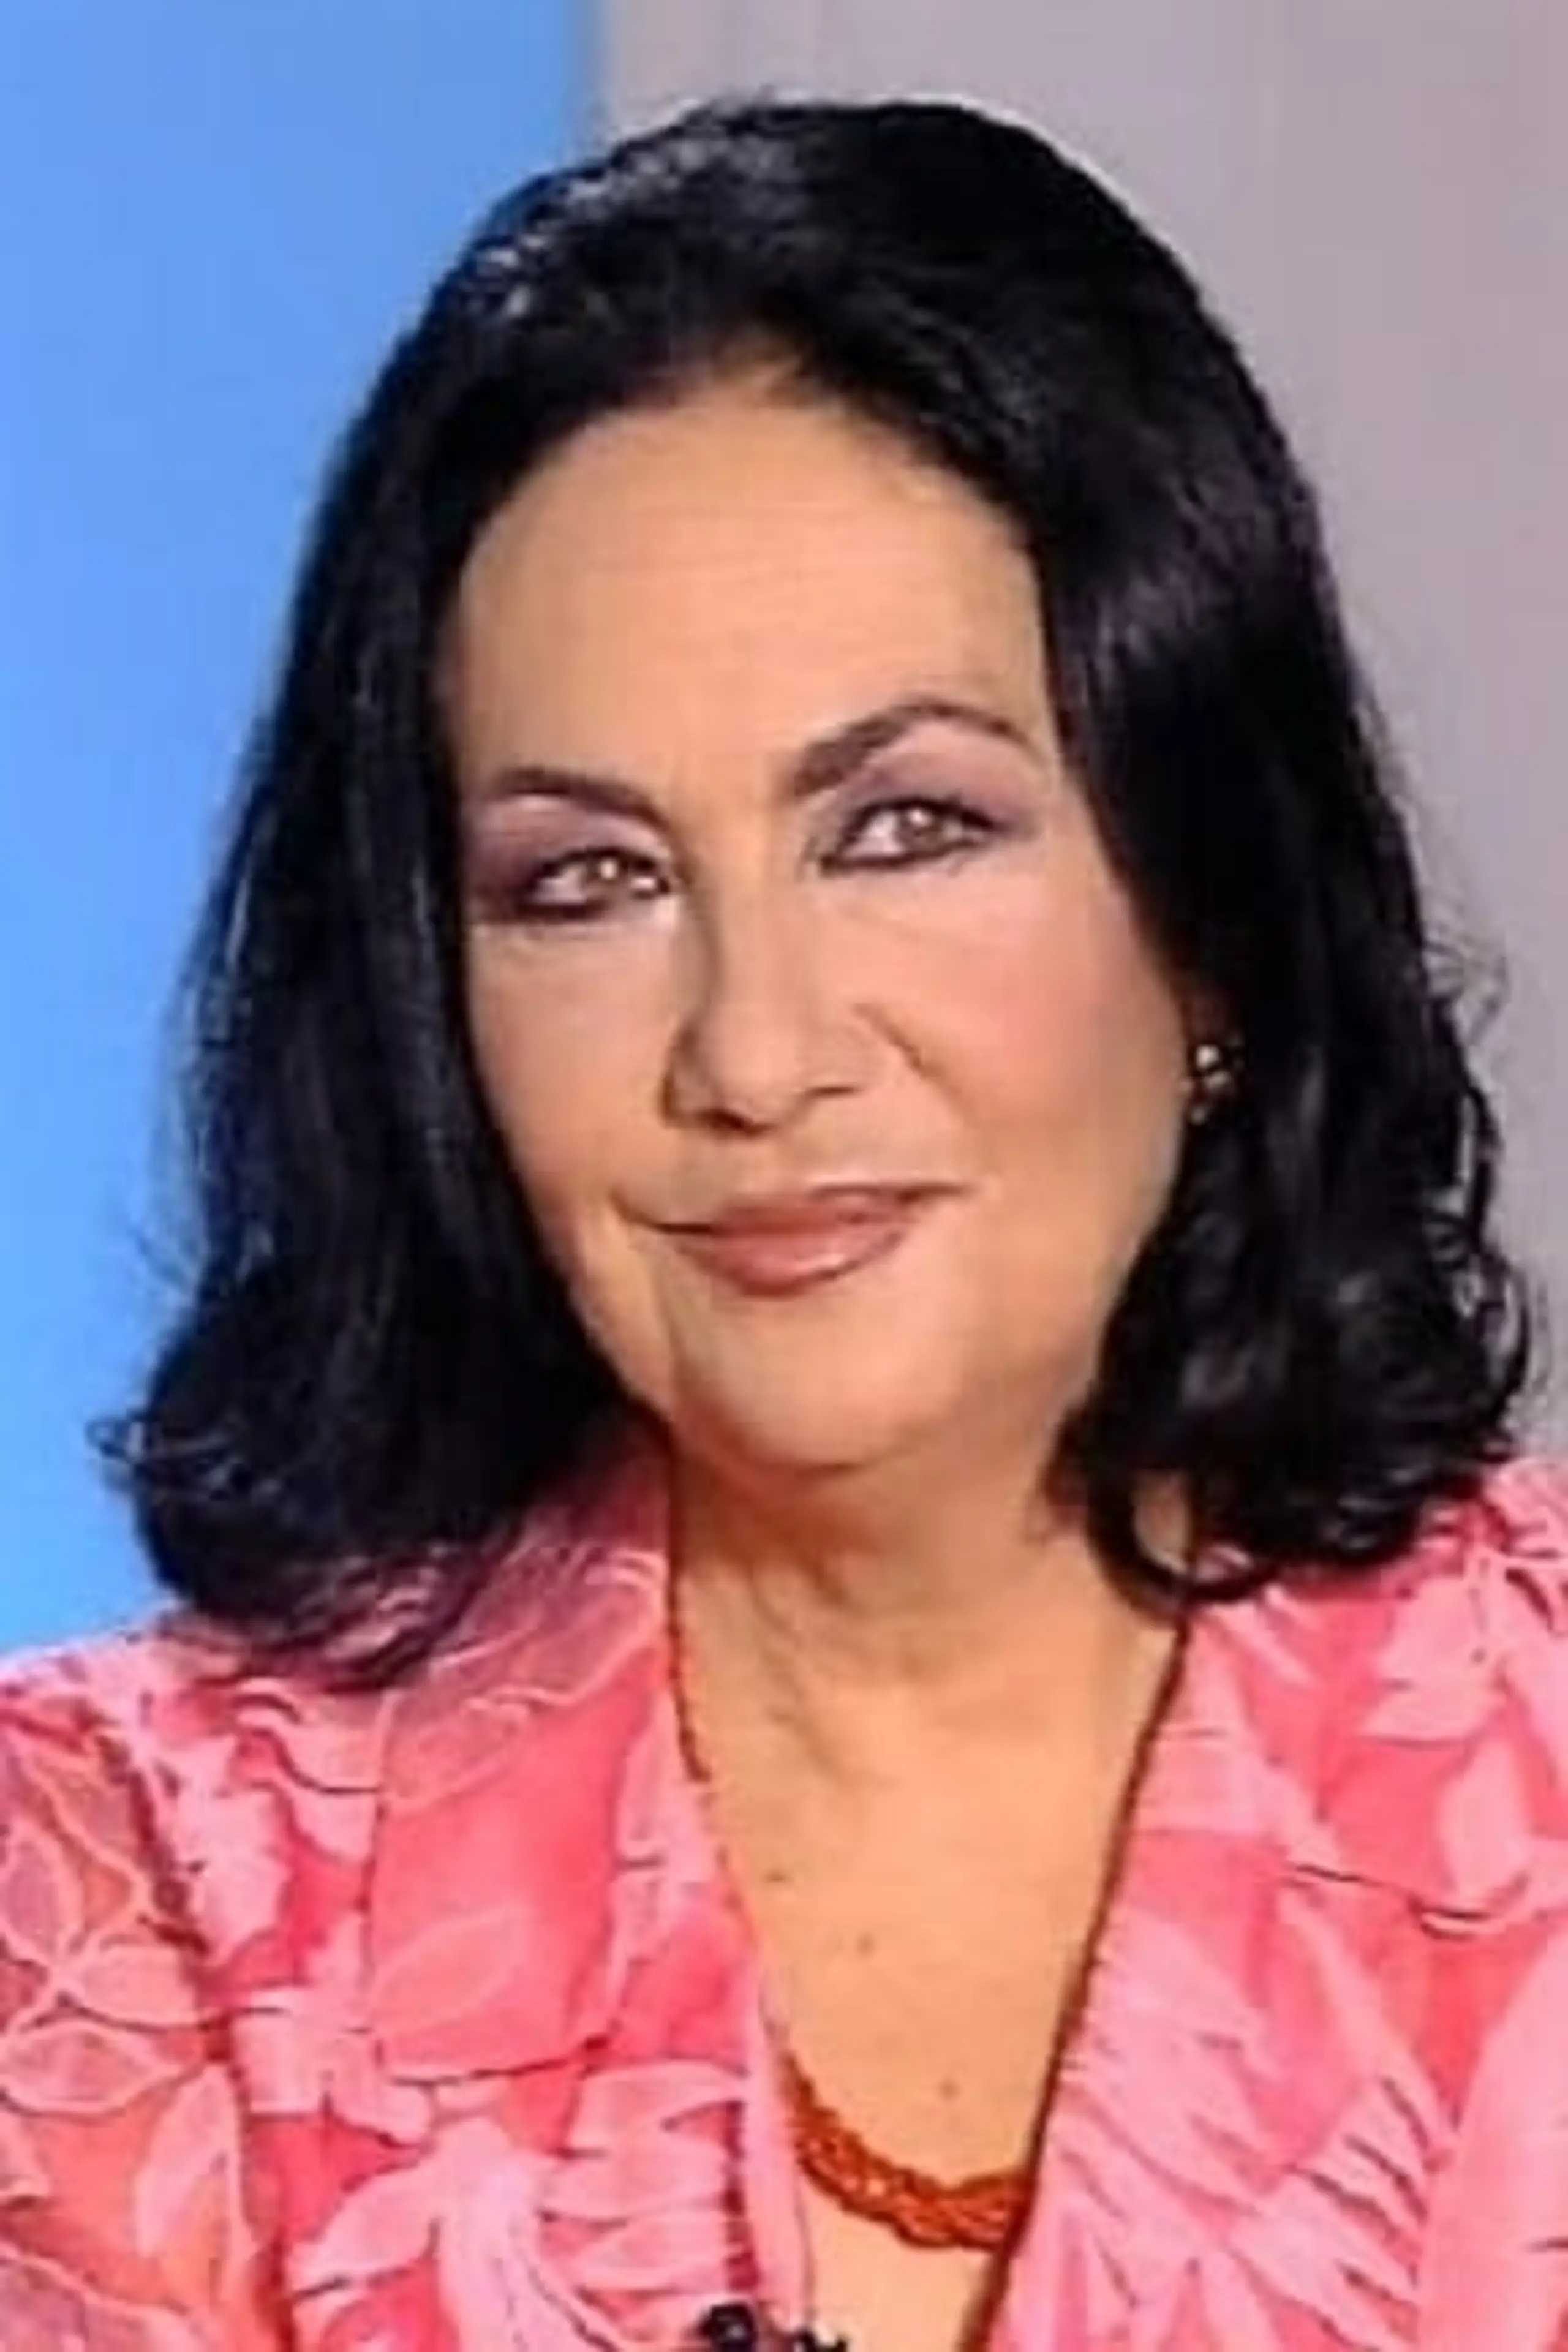 Sara Lezana